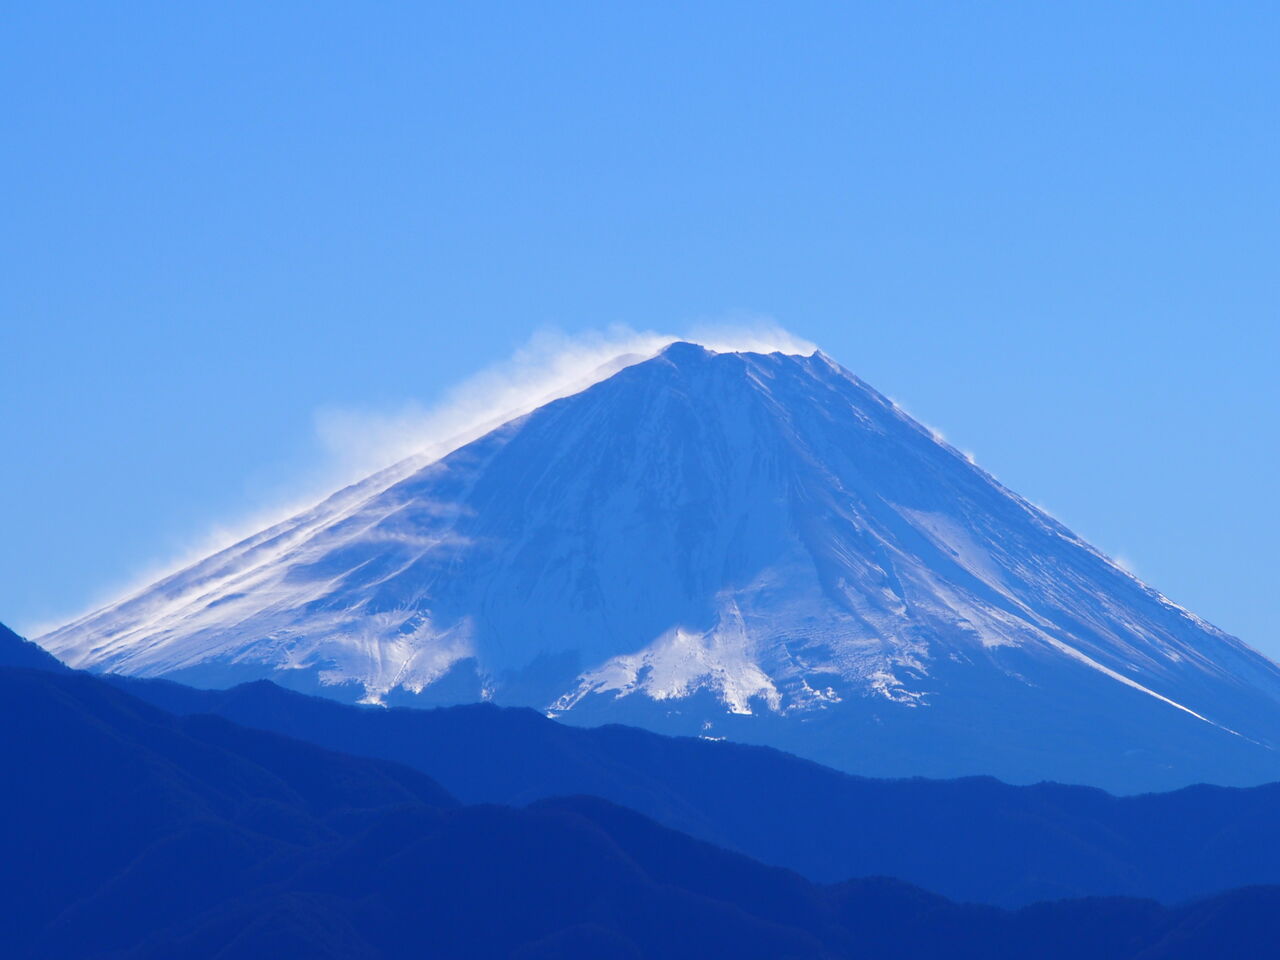 これまで撮り貯めた写真 壁紙向き Wallpaper 富士山 Mt Fuji Bicycle Shop 秘密基地 へようこそ